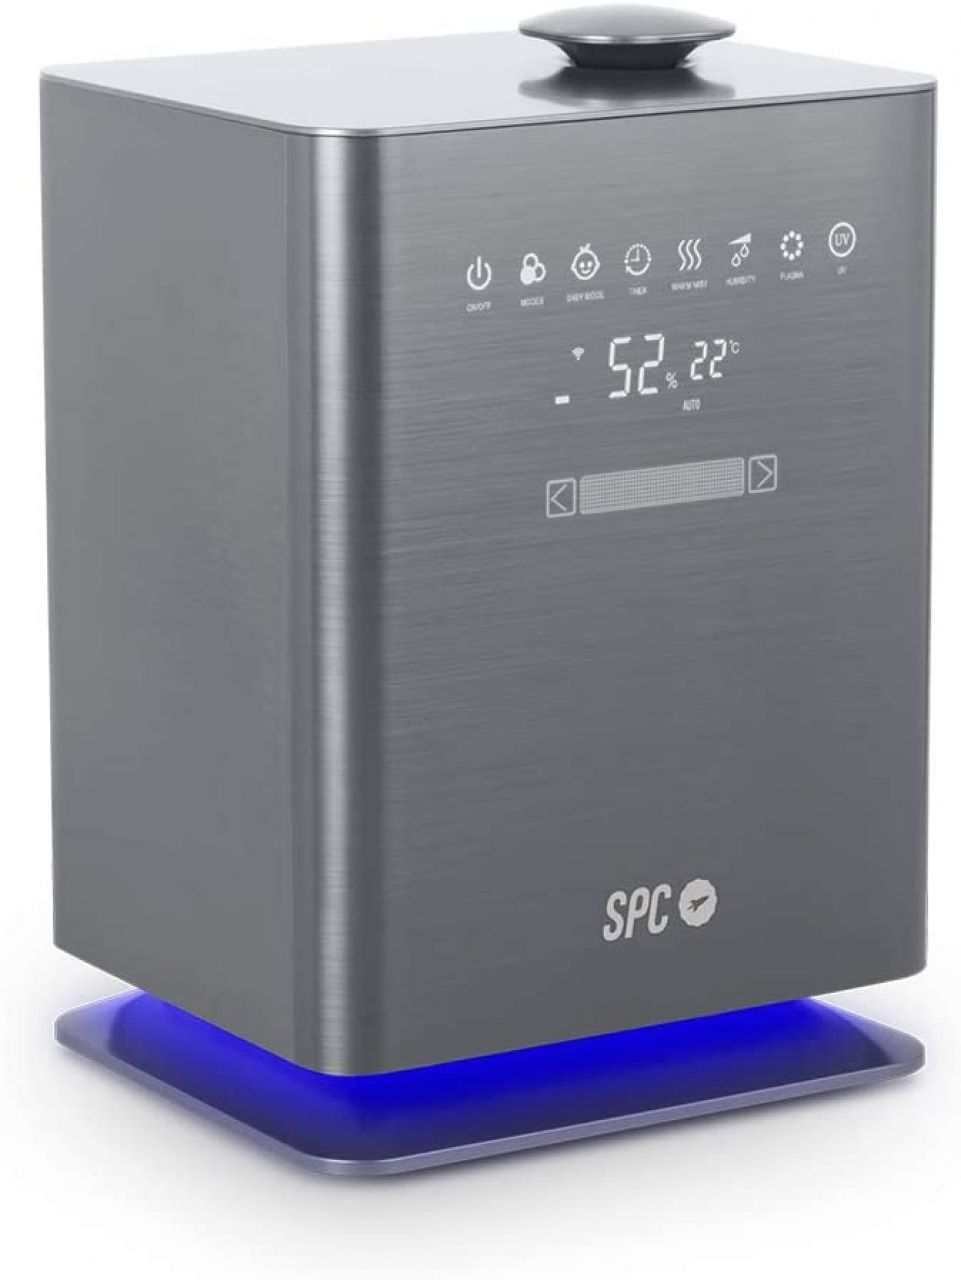 Destacada Humidificador inteligente SPC Sedna elimina el 99,9% de bacterias. 10 modos WiFi